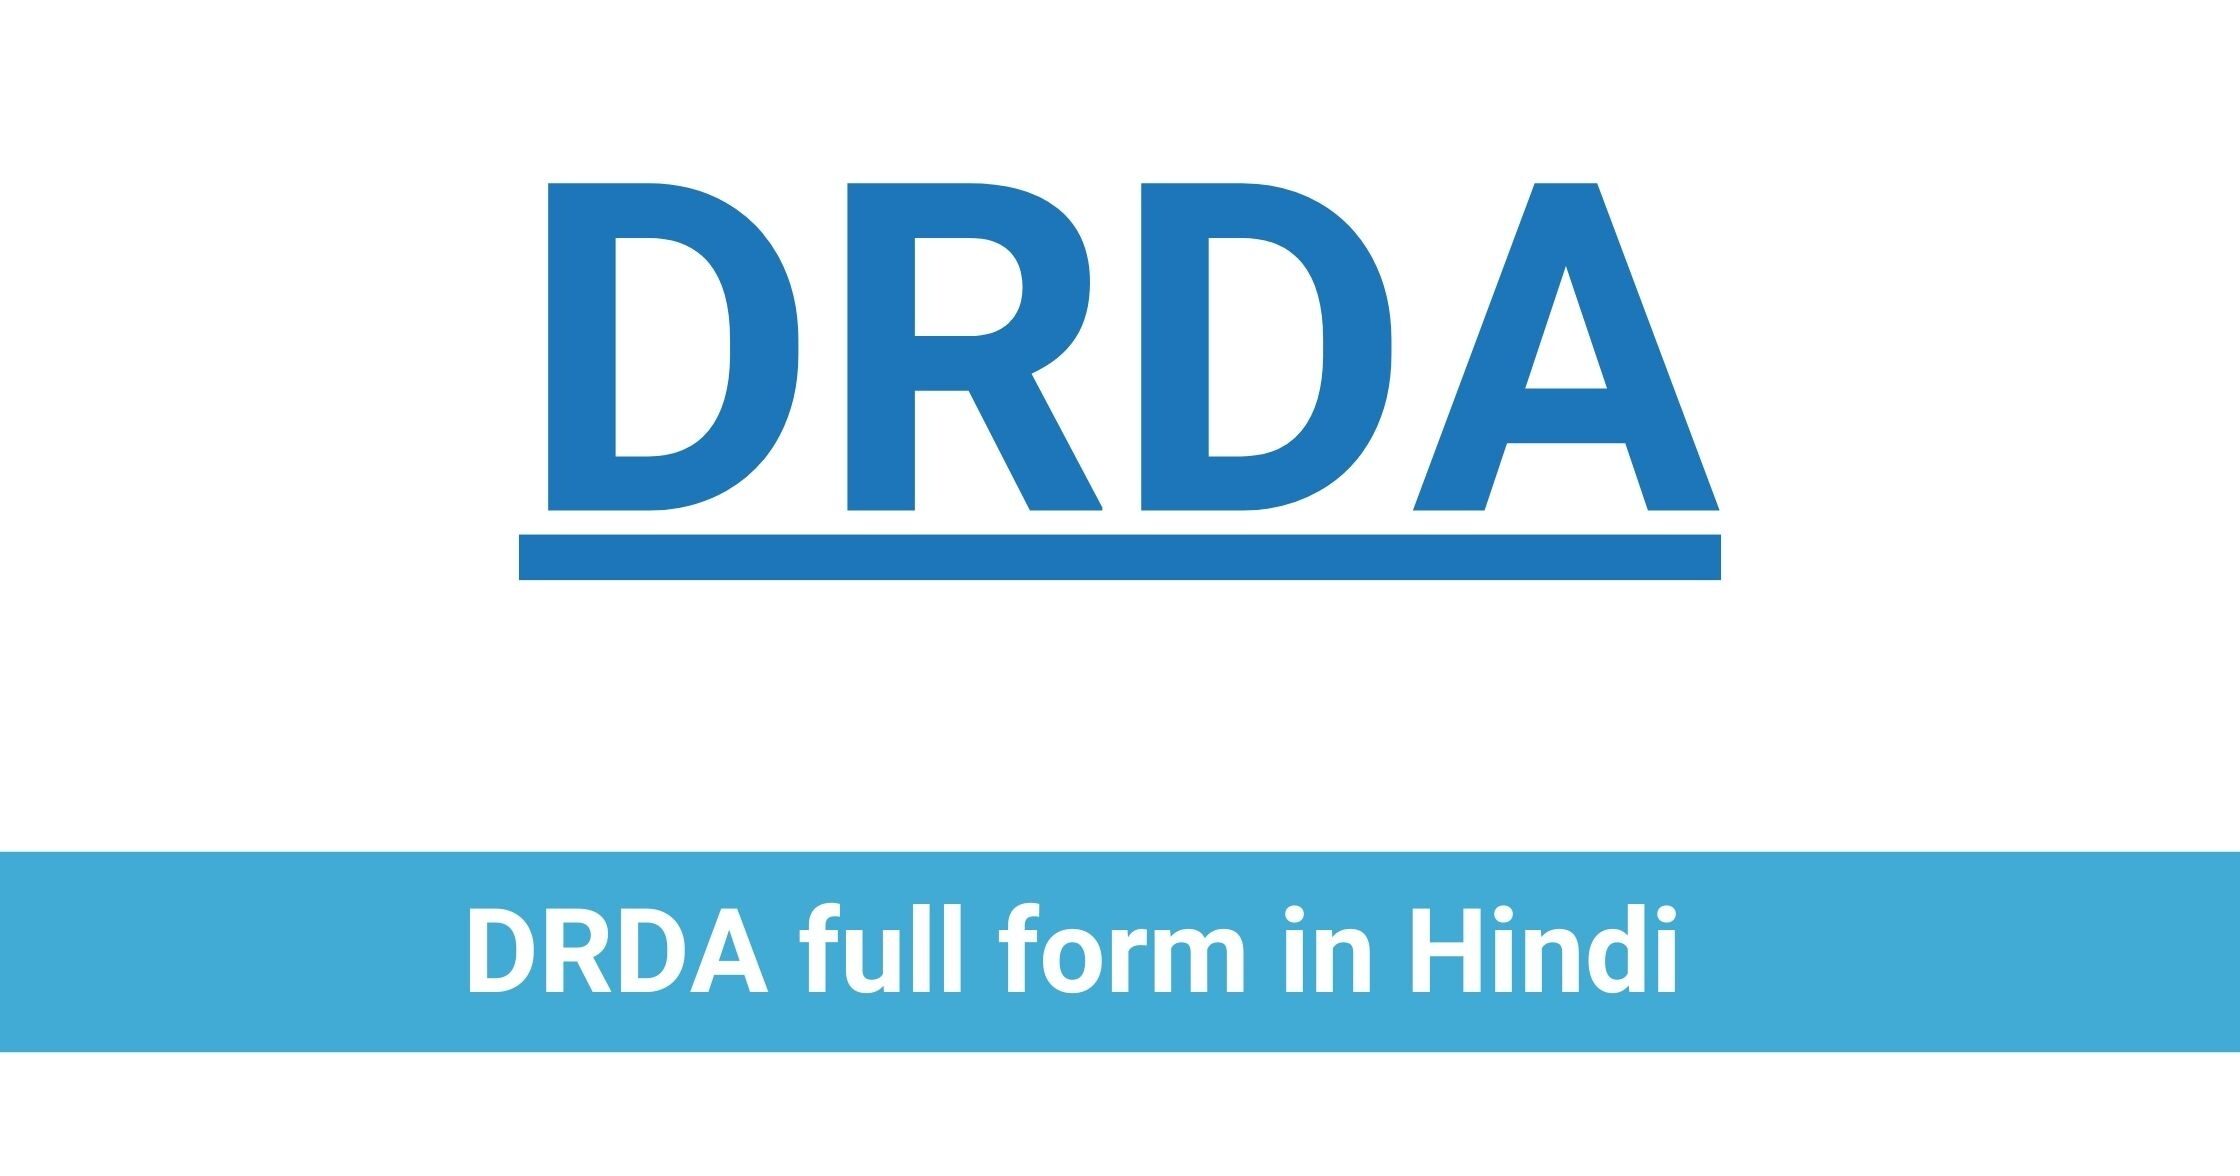 DRDA full form in Hindi